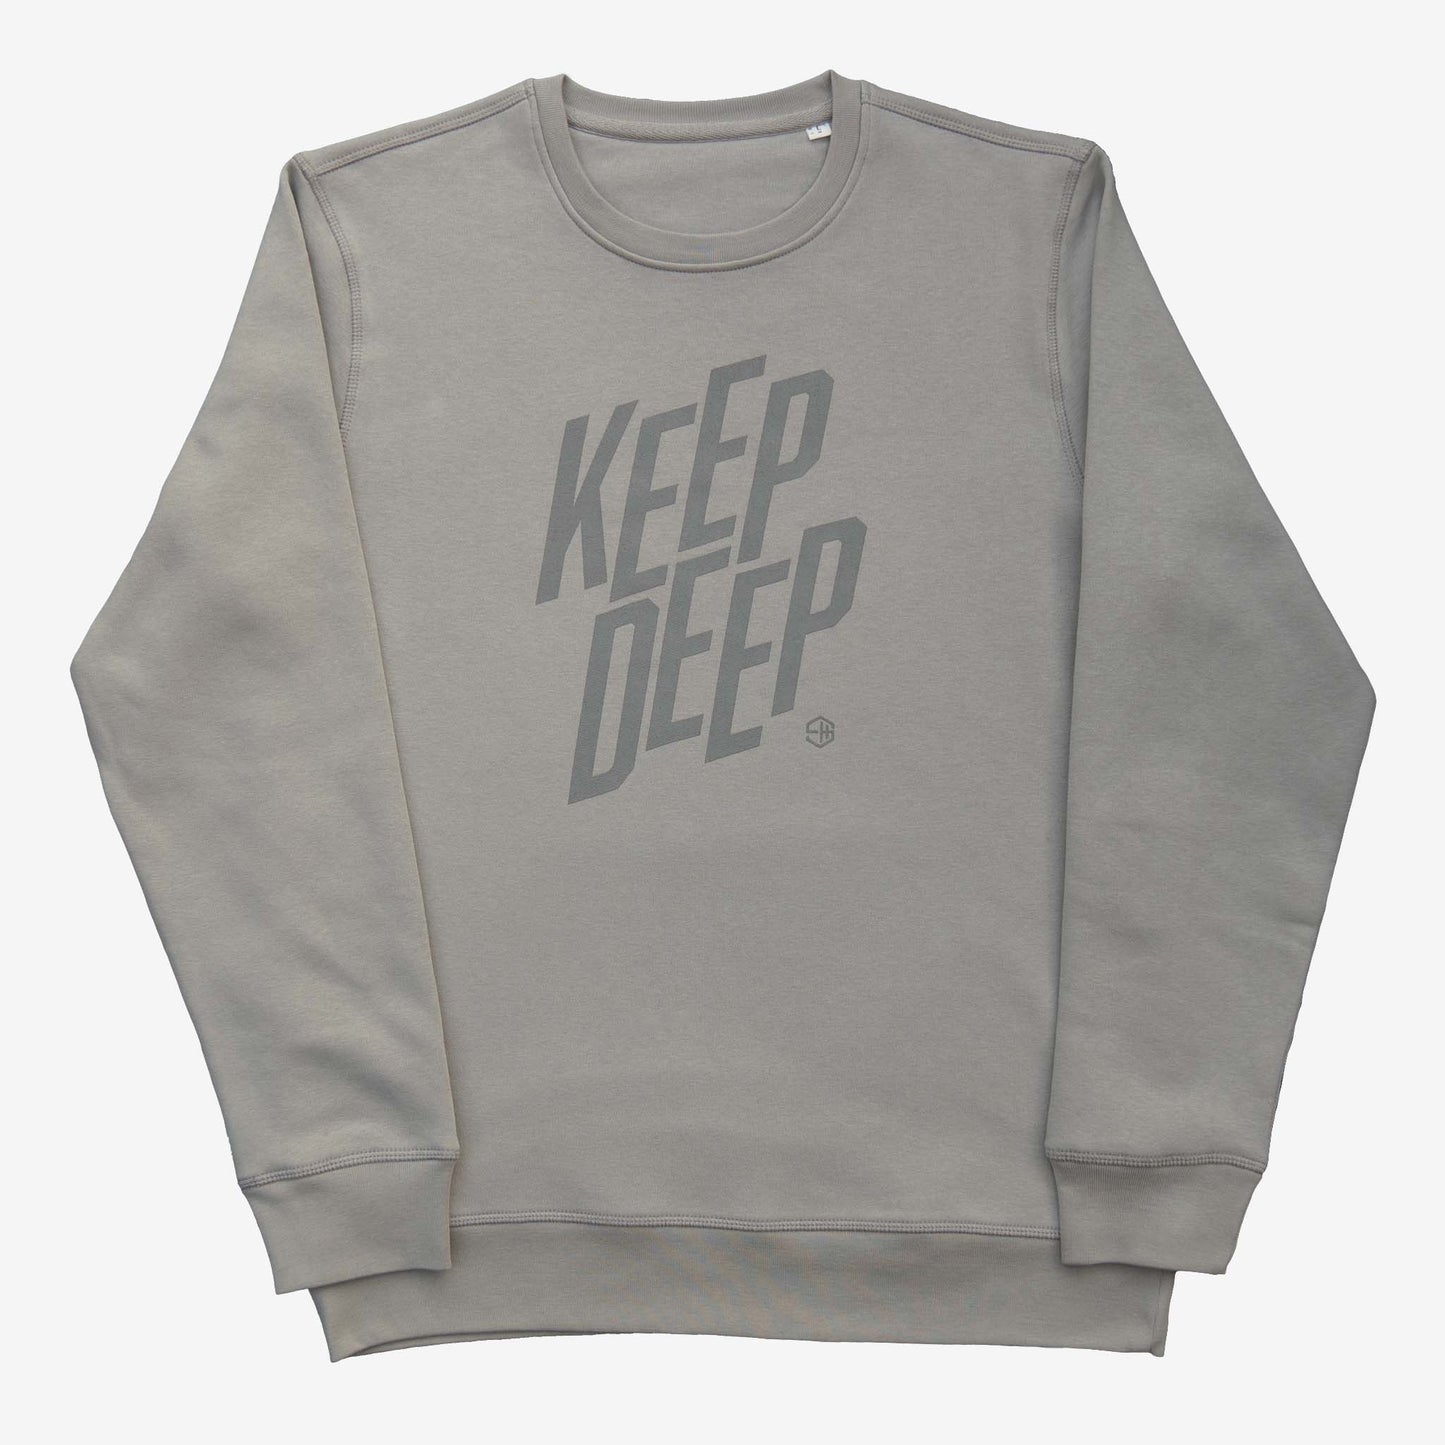 Keep Deep House Music Sweatshirt Grey